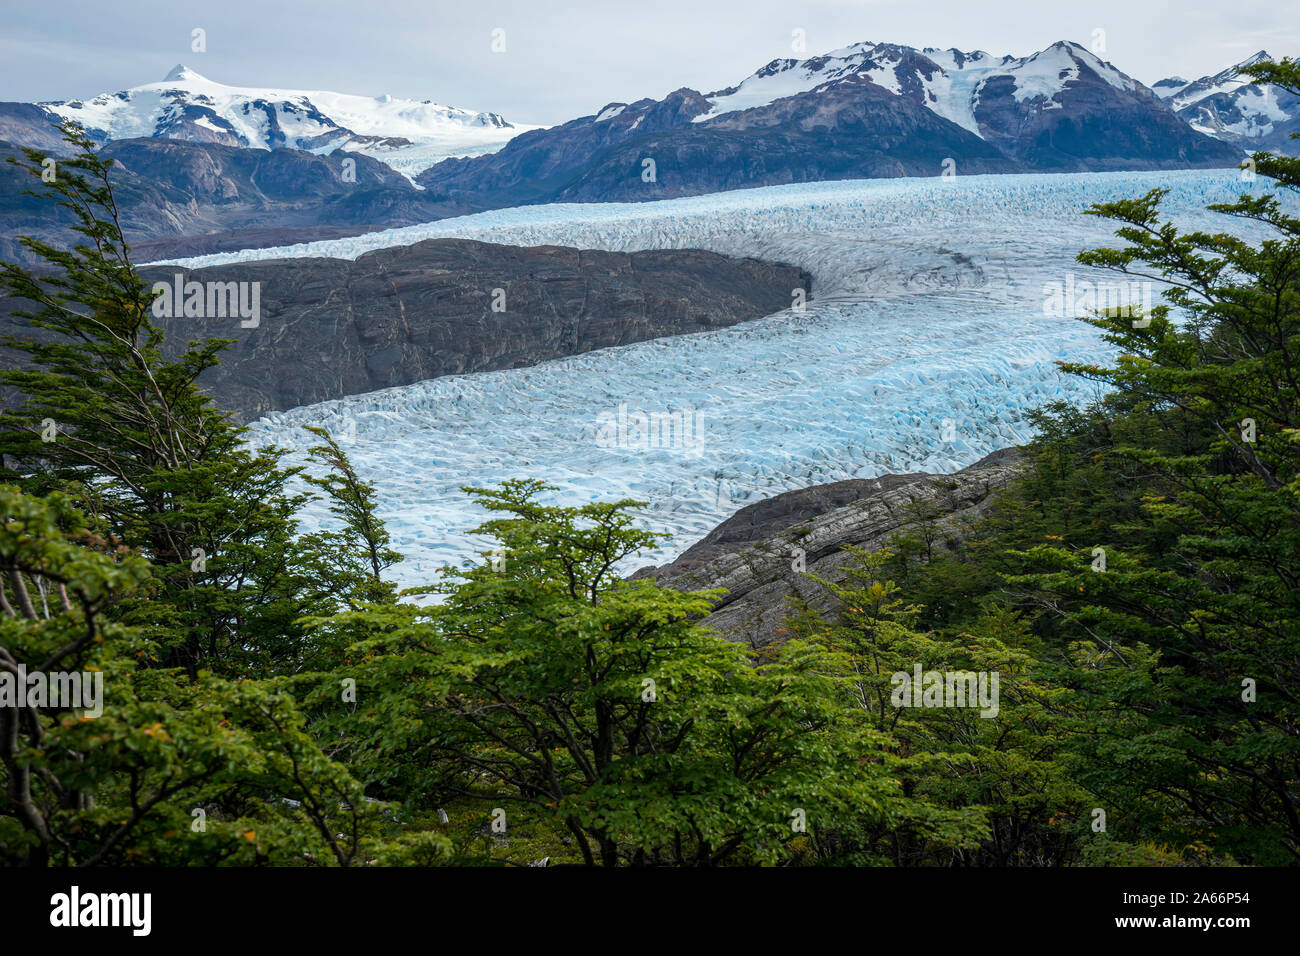 Glacier Grey entouré de montagnes, le Parc National Torres del Paine, Chili, région de Magallanes Banque D'Images